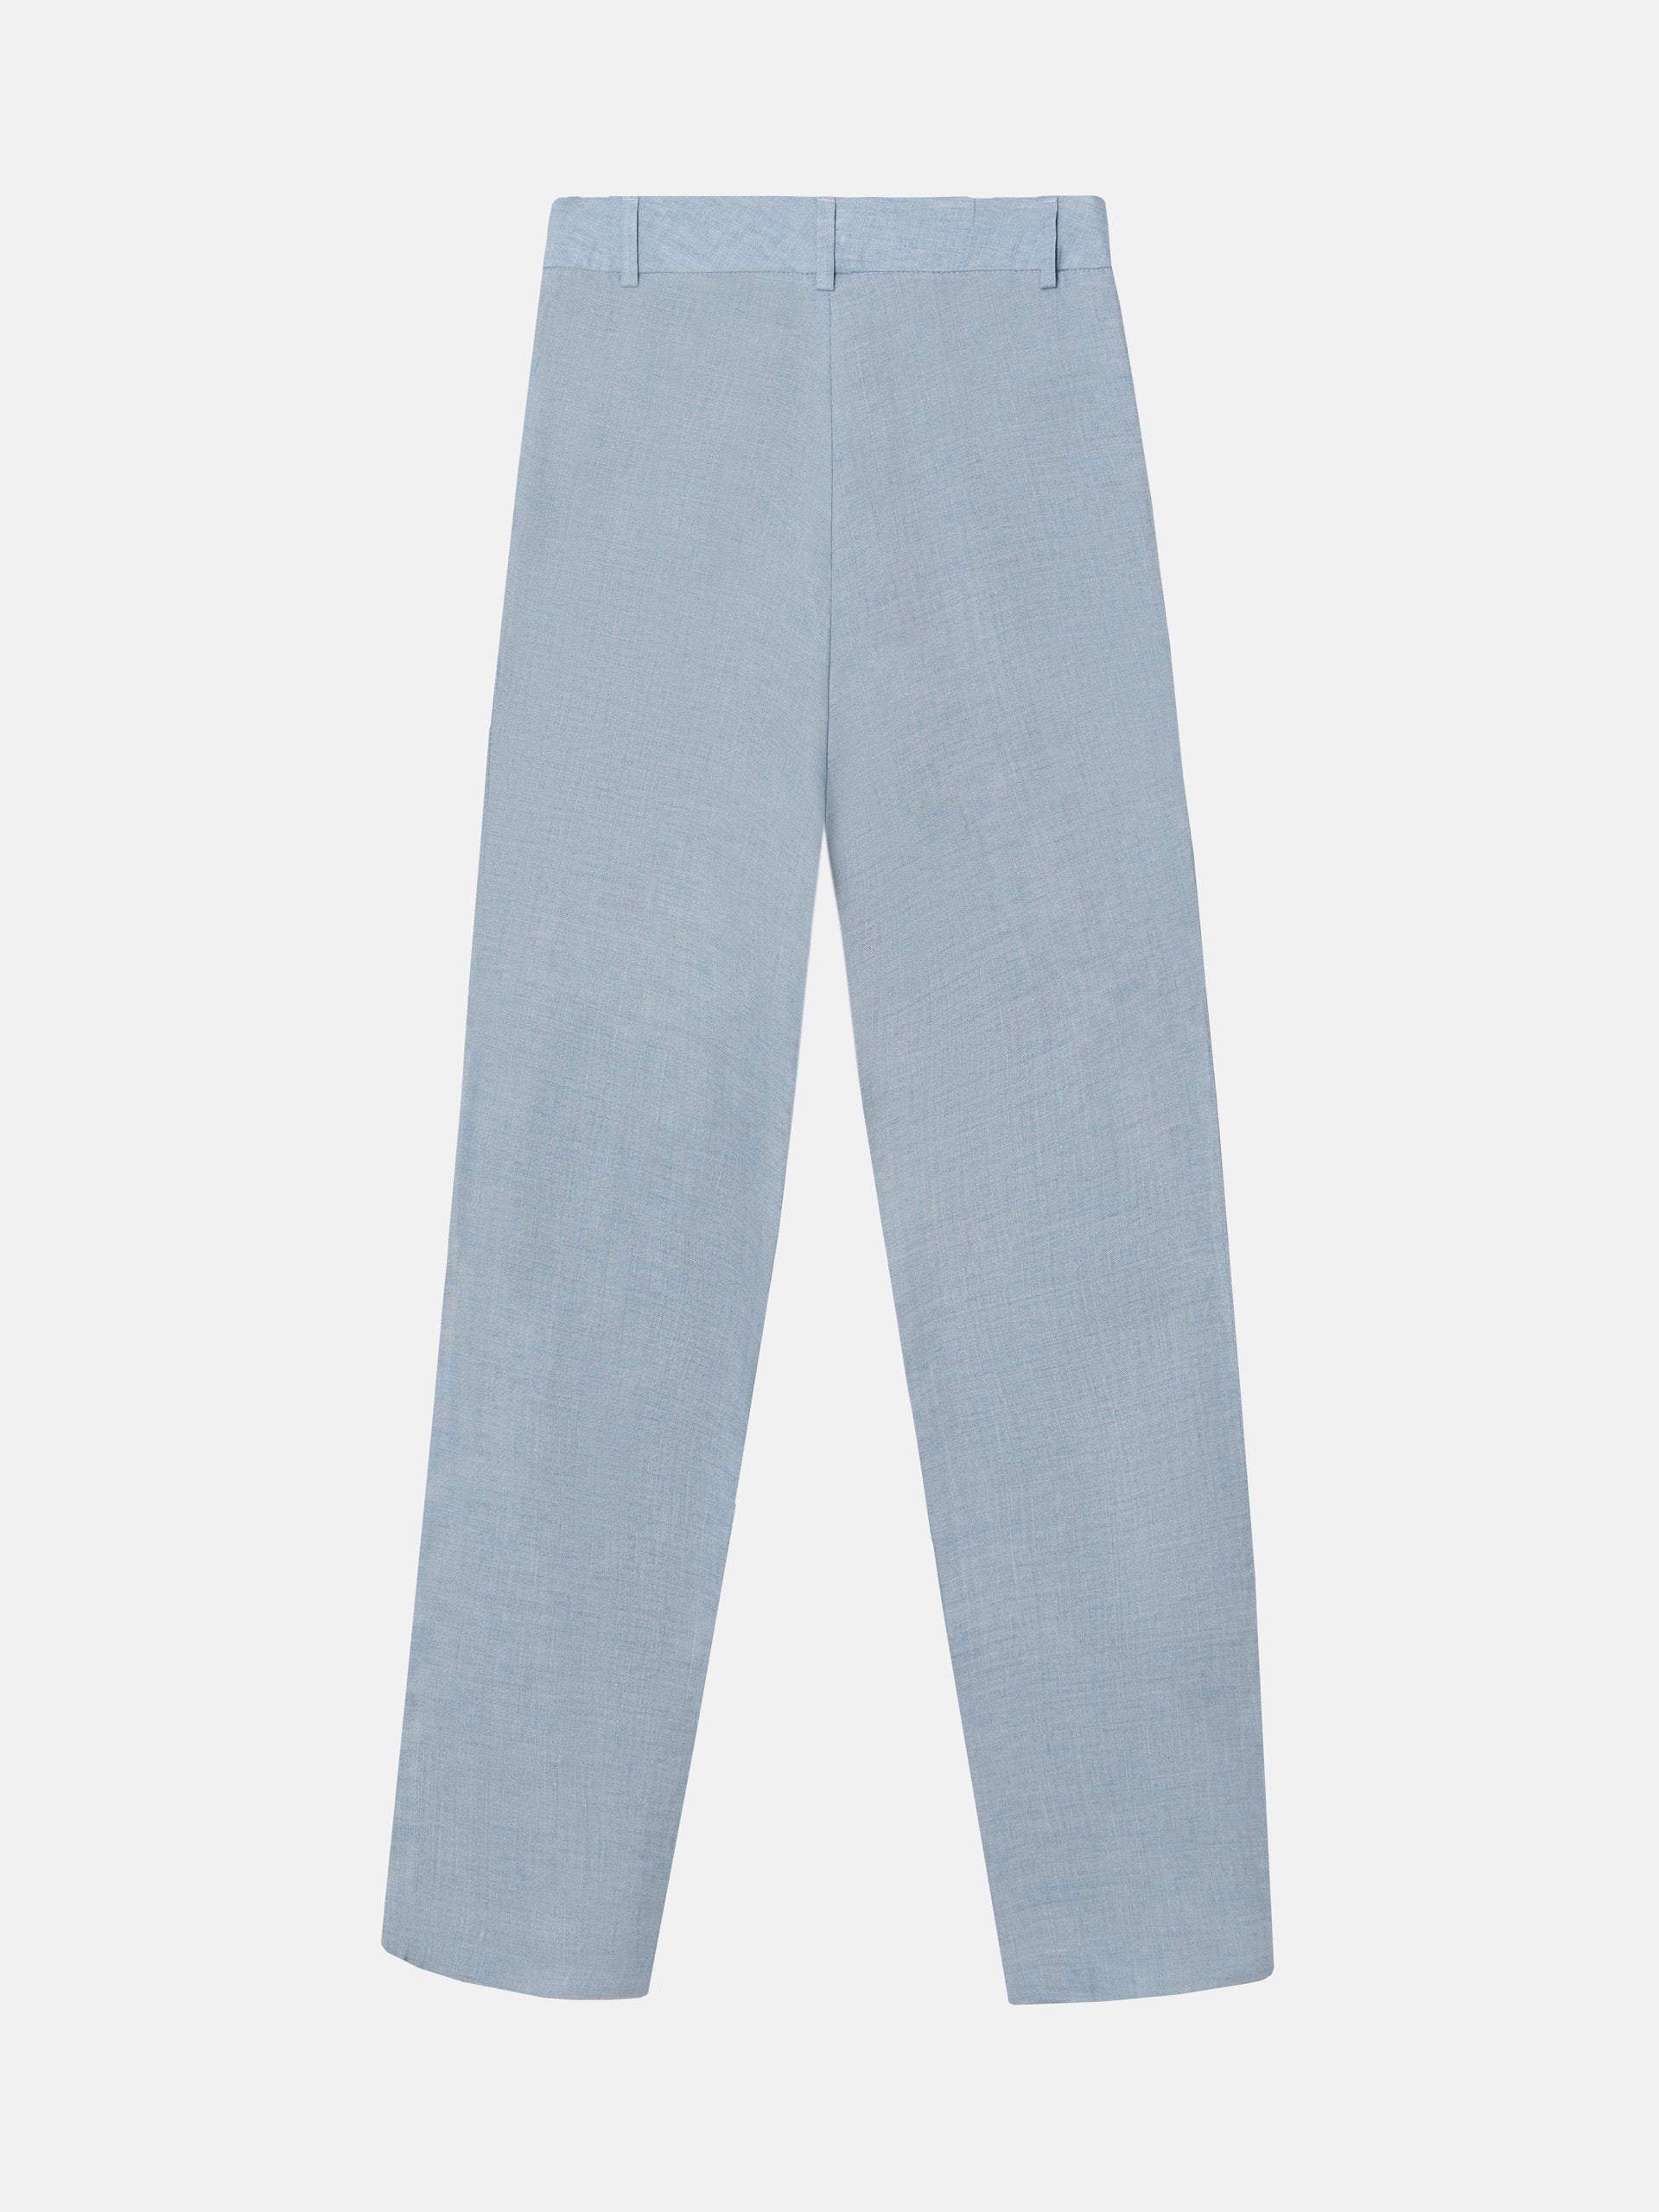 Pantalon habillé en jean bleu pour femme